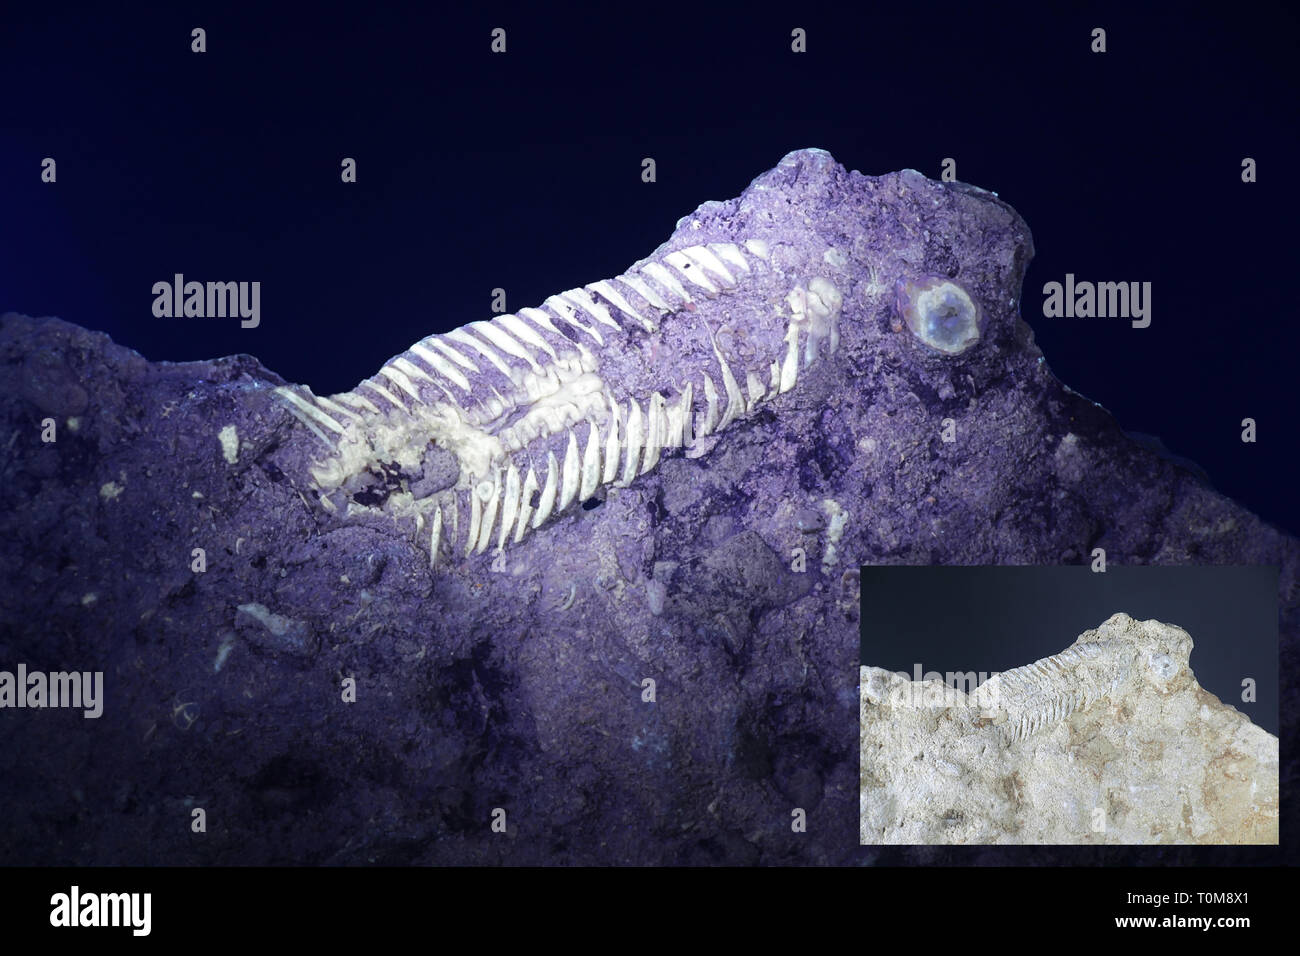 Combustibles fossiles de trilobites du Silurien de Saarenmaa, Estonie, photographiée en lumière ultraviolette (365 nm). Plus petite image montrant même échantillon dans la lumière du jour. Banque D'Images